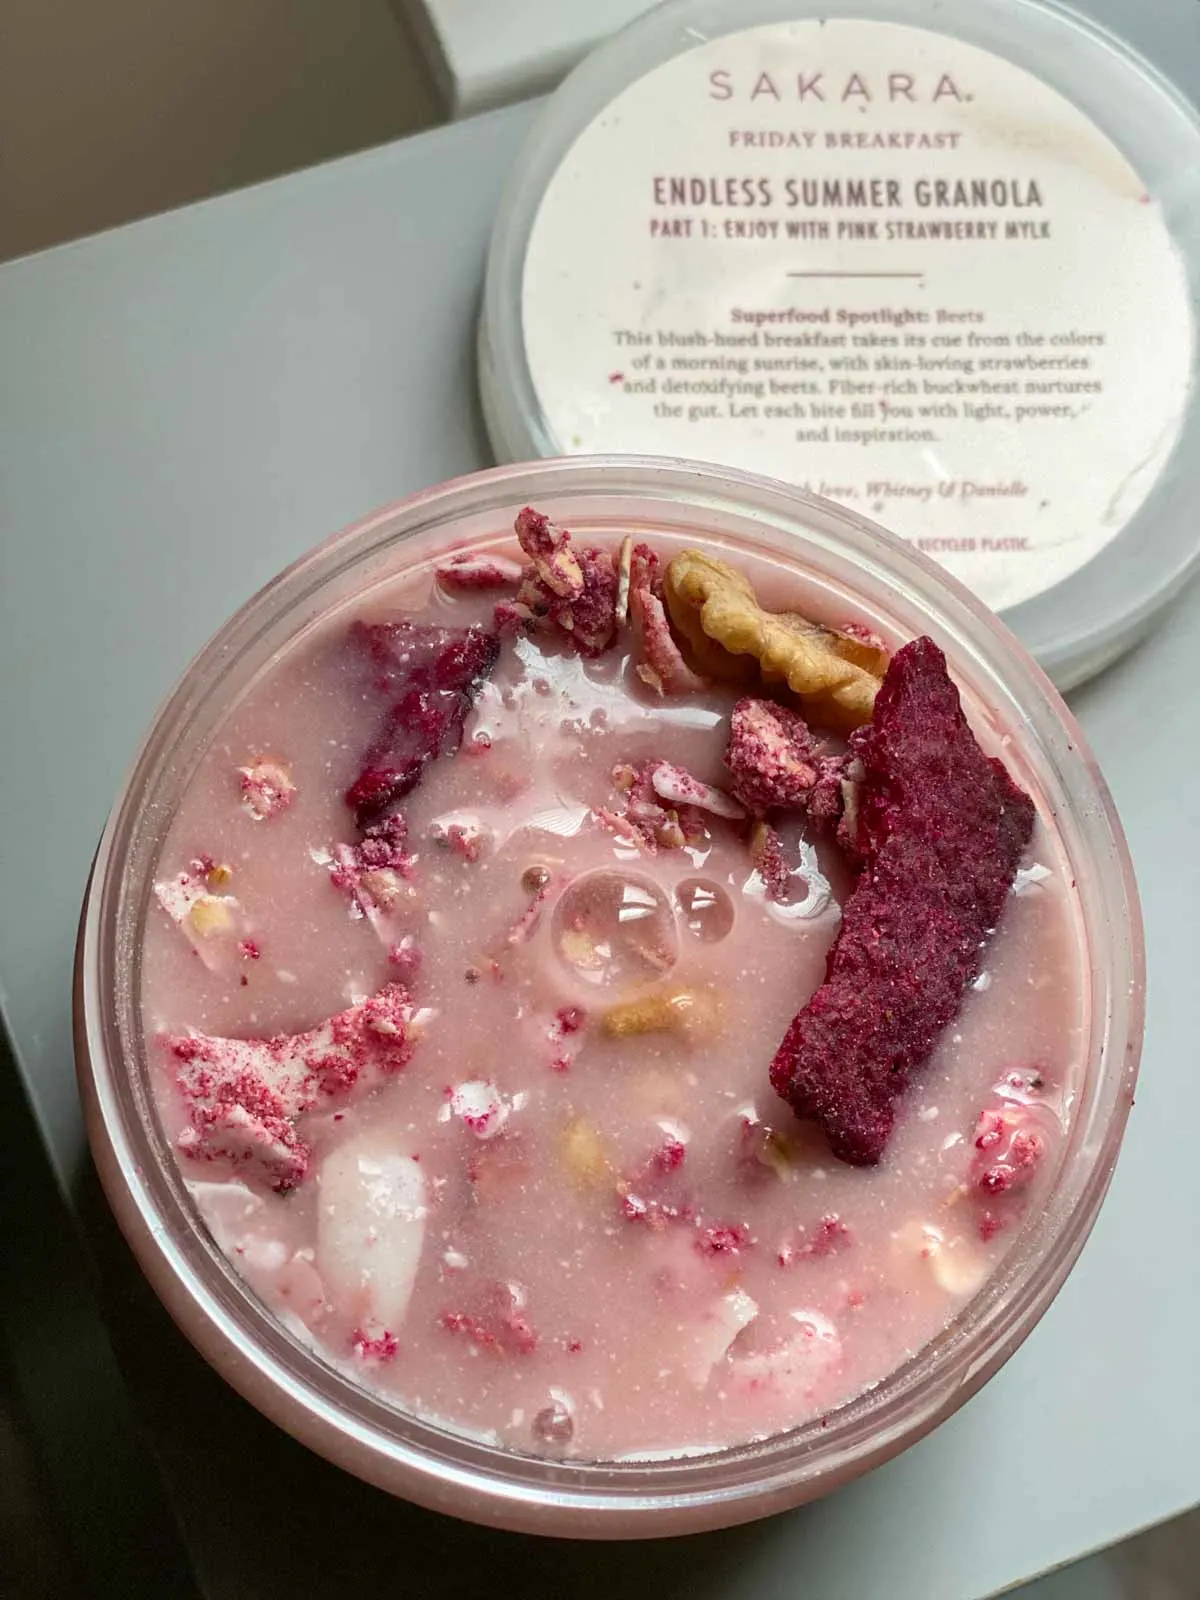 endless summer granola with pink strawberry mylk breakfast from sakara